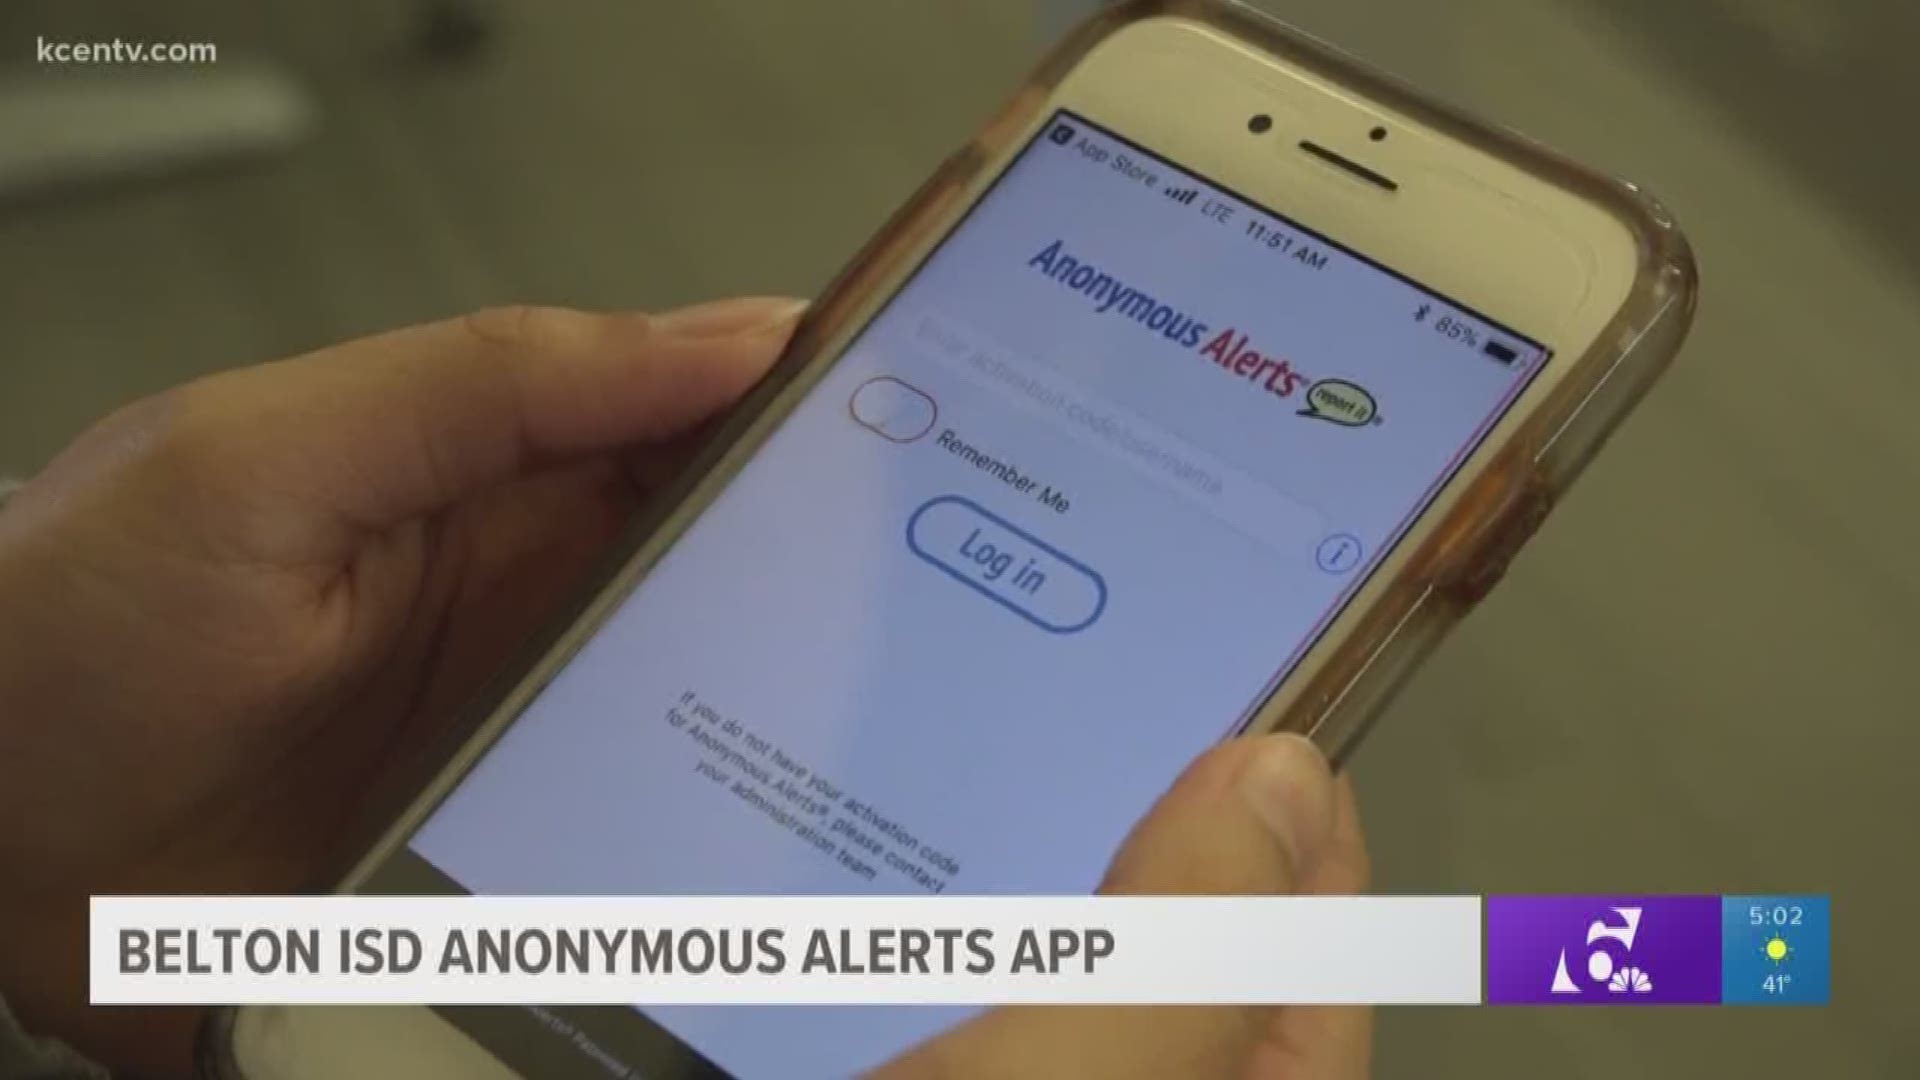 Belton ISD Anonymous Alerts app